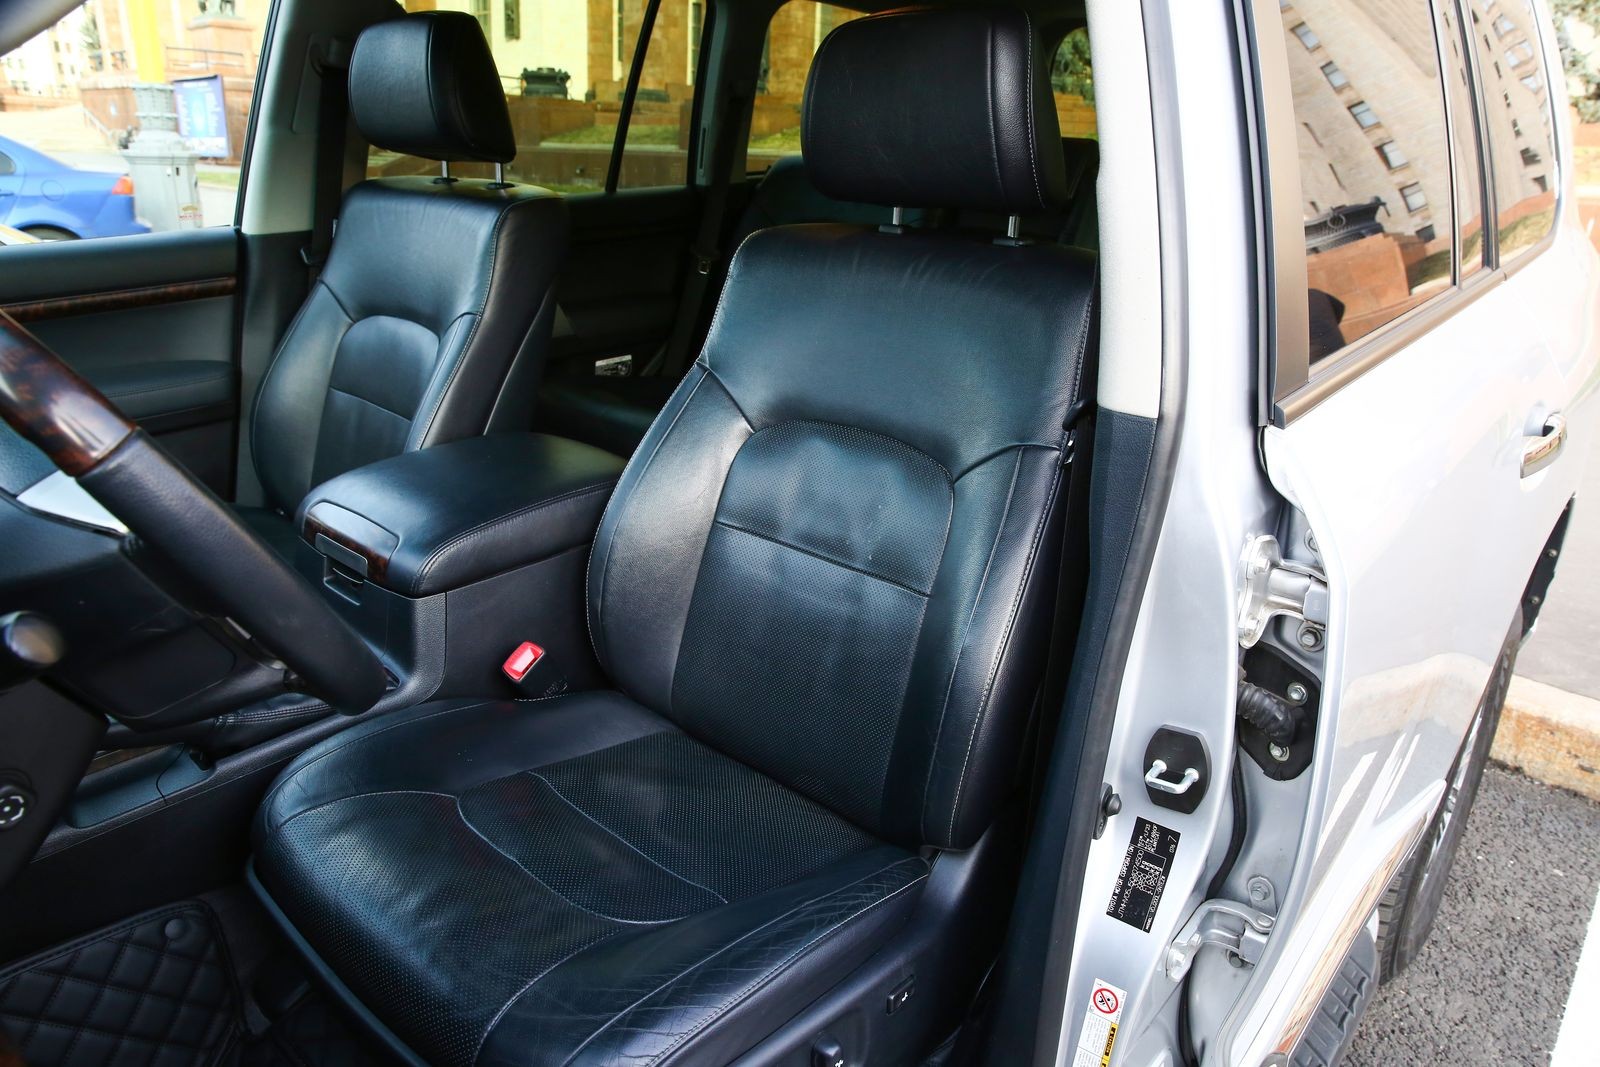 Toyota Land Cruiser 200 с пробегом: салон, тормоза, подвеска - – автомобильный журнал